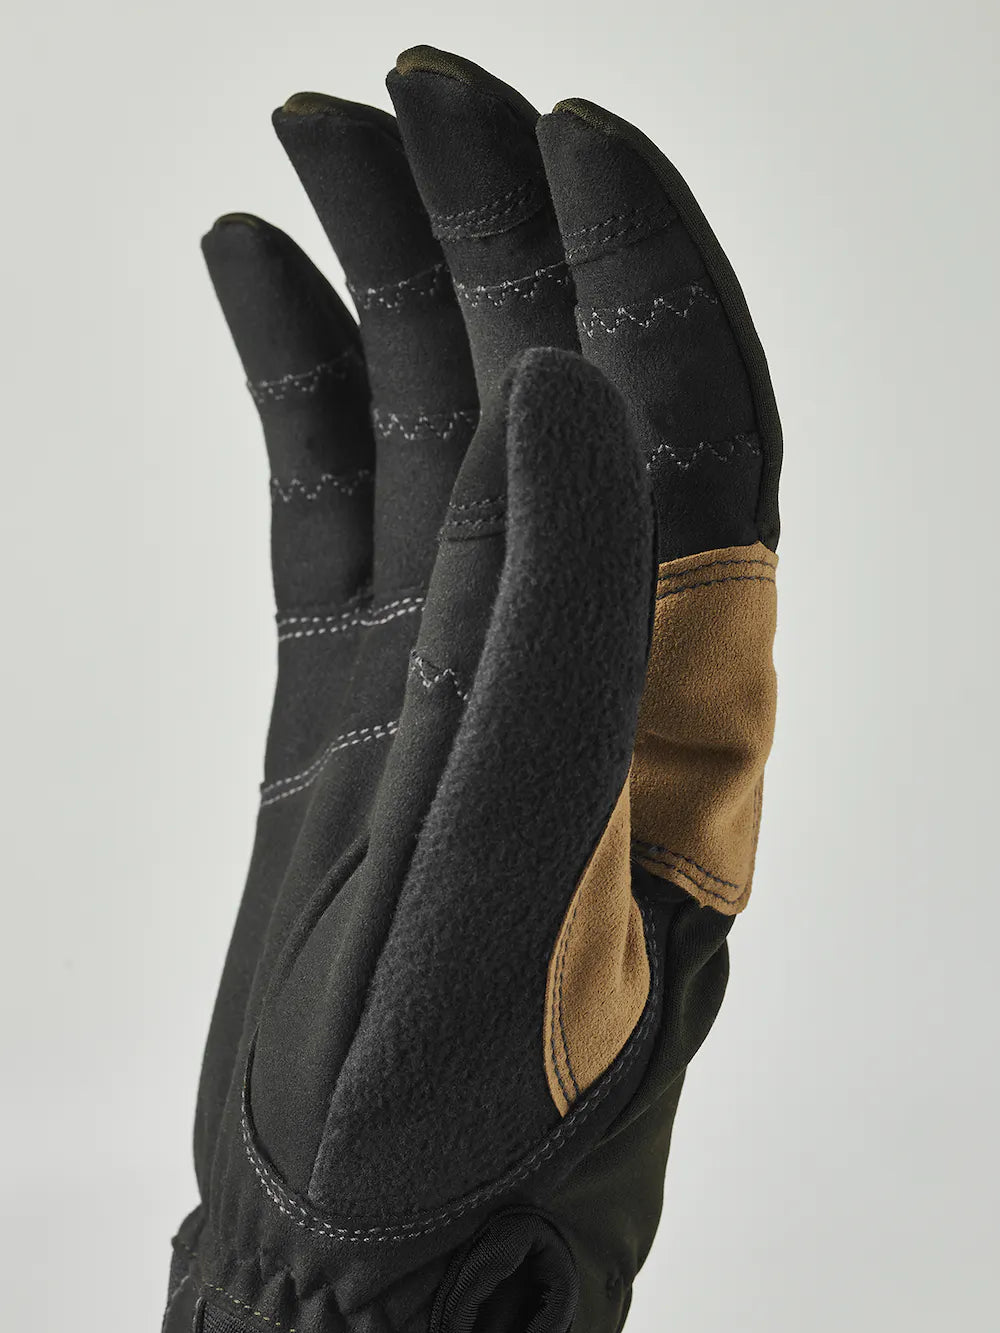 Ergo Grip Active Wool Terry - 5 finger (Size 9) - Dark forest / Black